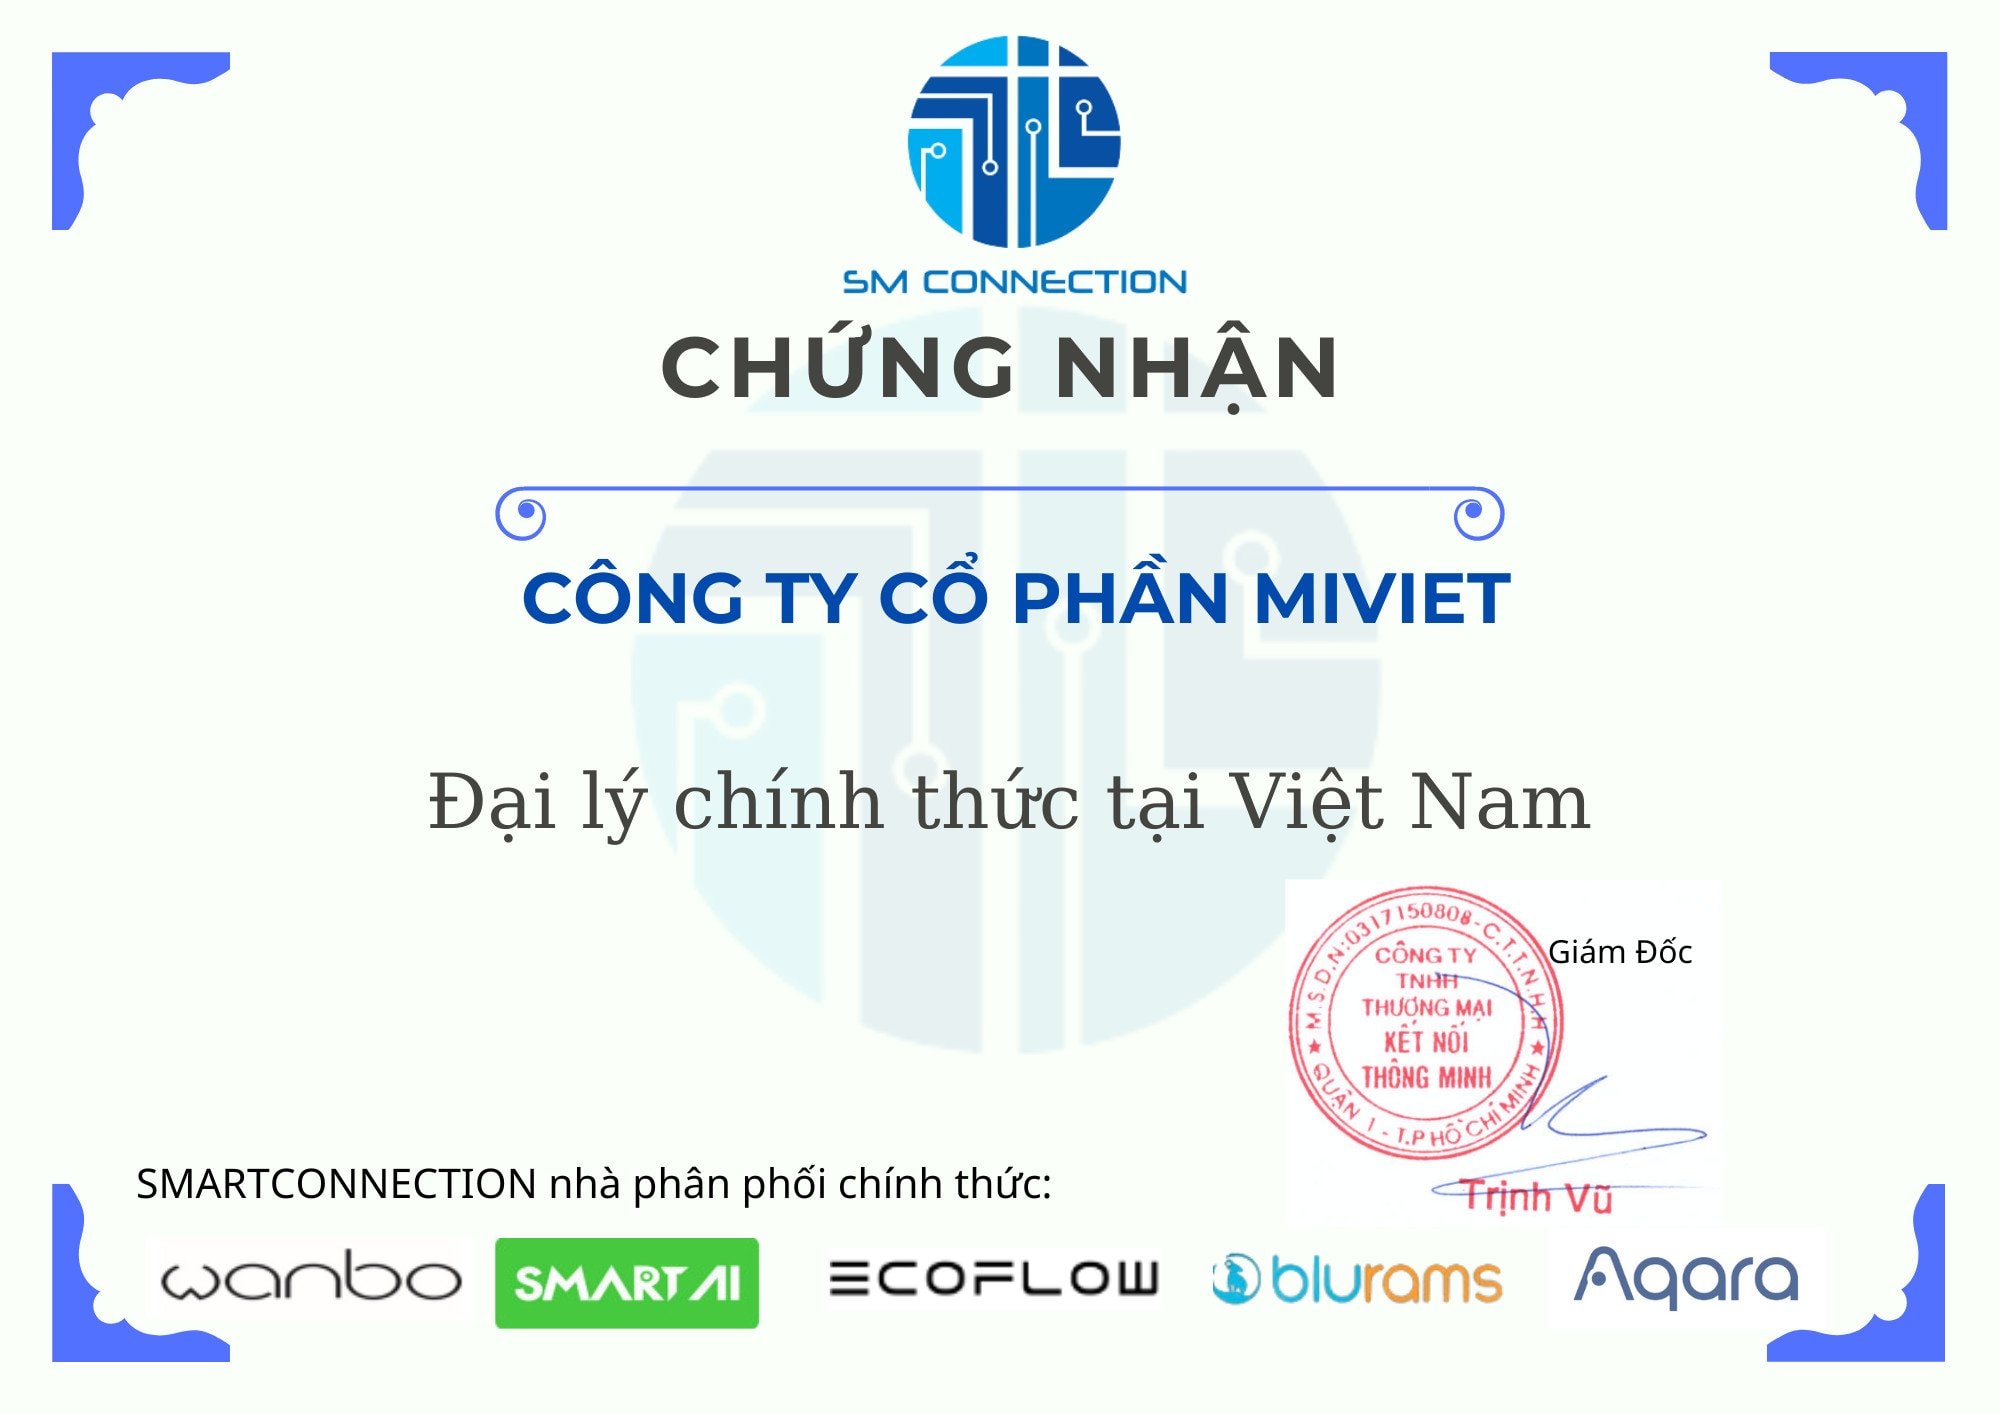 Tivi Thông Minh Xiaomi Mi TV3s 60inch